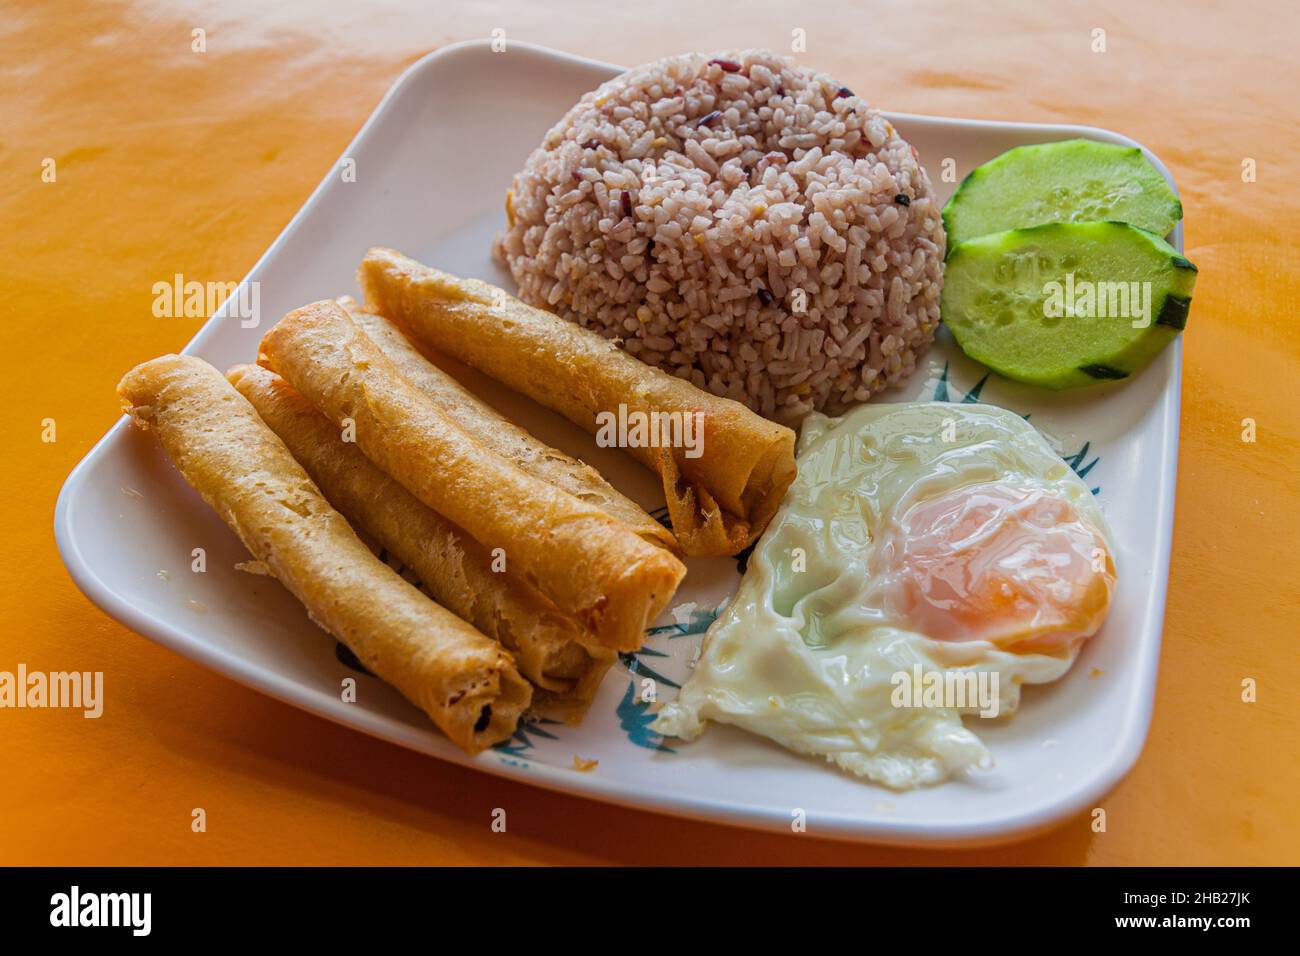 Frühstück auf den Philippinen - Reis mit gebratenen Brötchen (Lumpia) und Ei Stockfoto